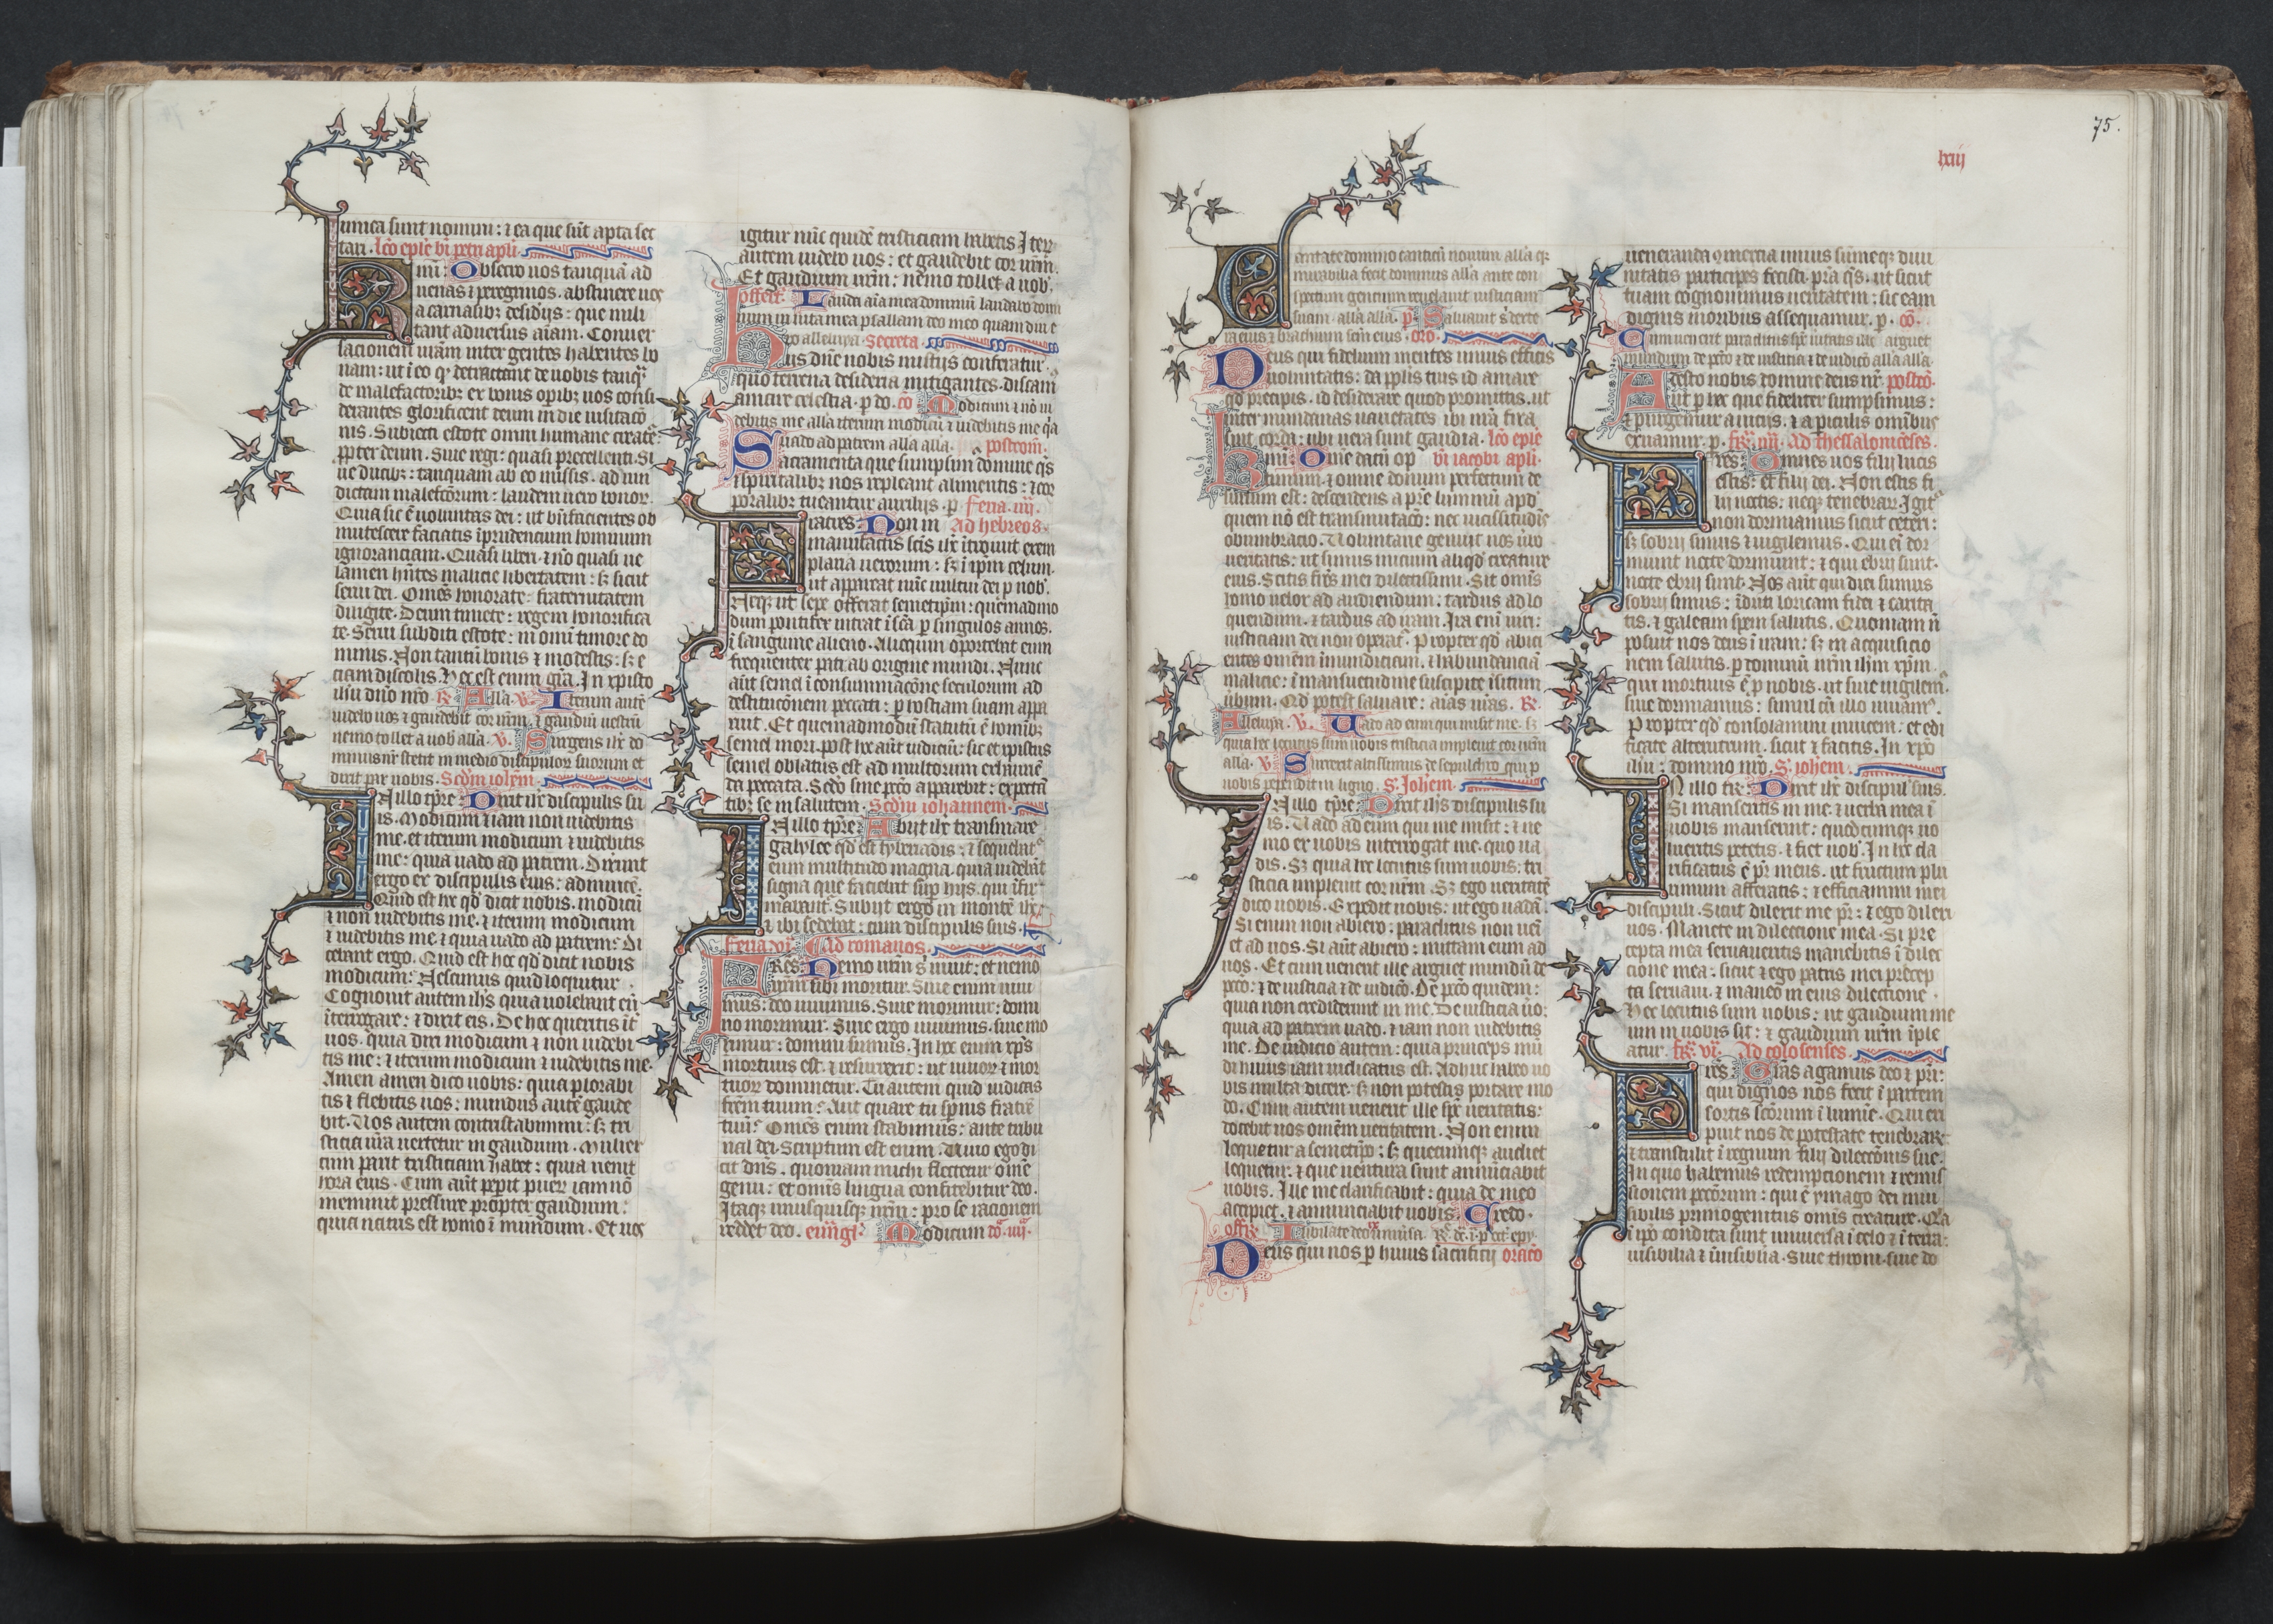 The Gotha Missal:  Fol. 75r, Text